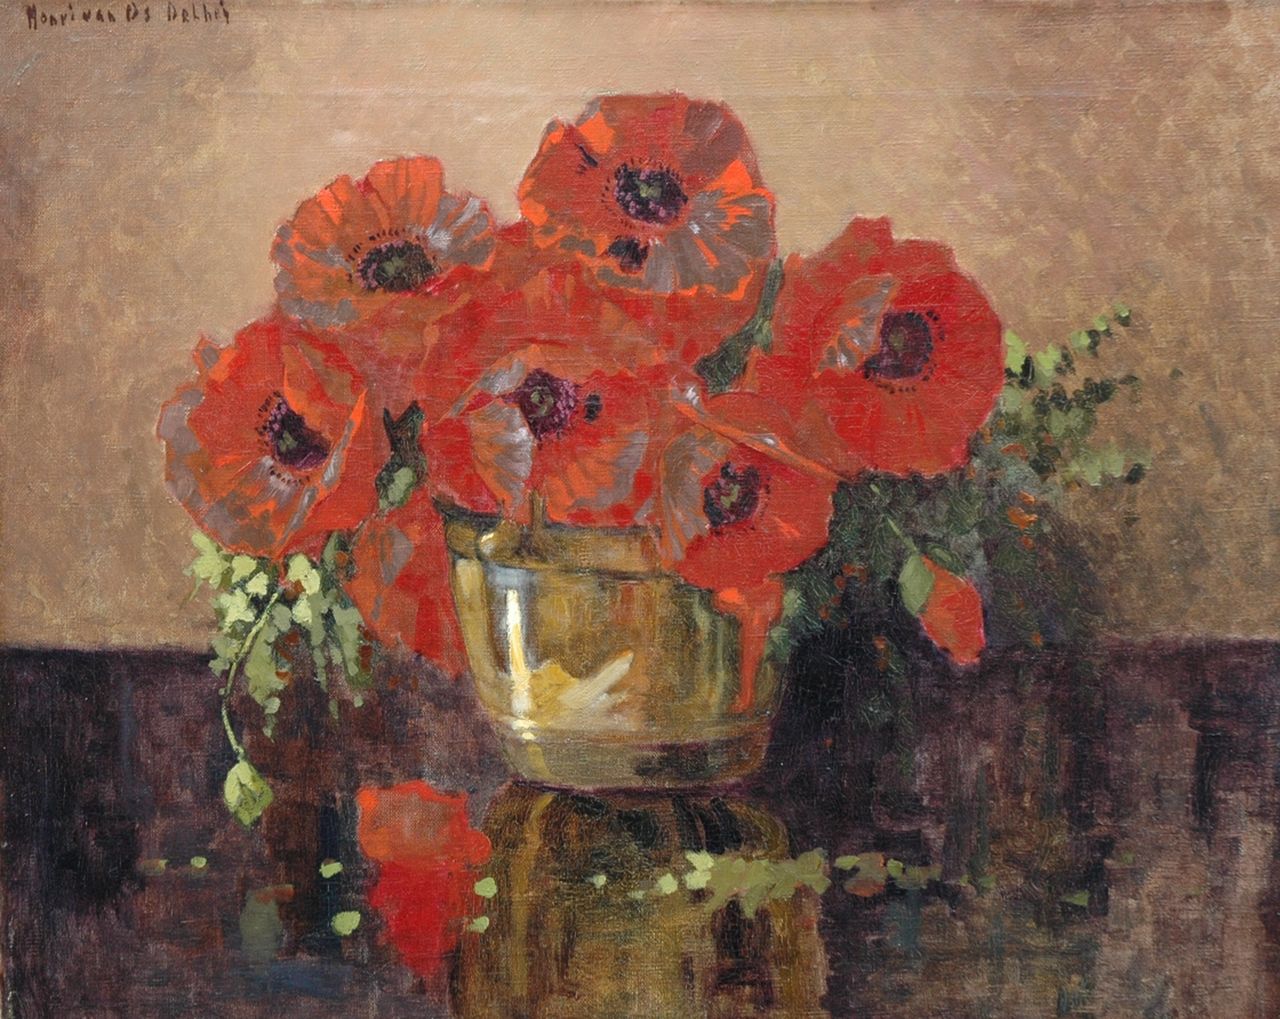 Os-Delhez (Hendrik van Os) H. van | Hendrik 'Henri' van Os-Delhez (Hendrik van Os), Poppy flowers in a copper bowl, Öl auf Leinwand 40,2 x 50,3 cm, signed u.l.